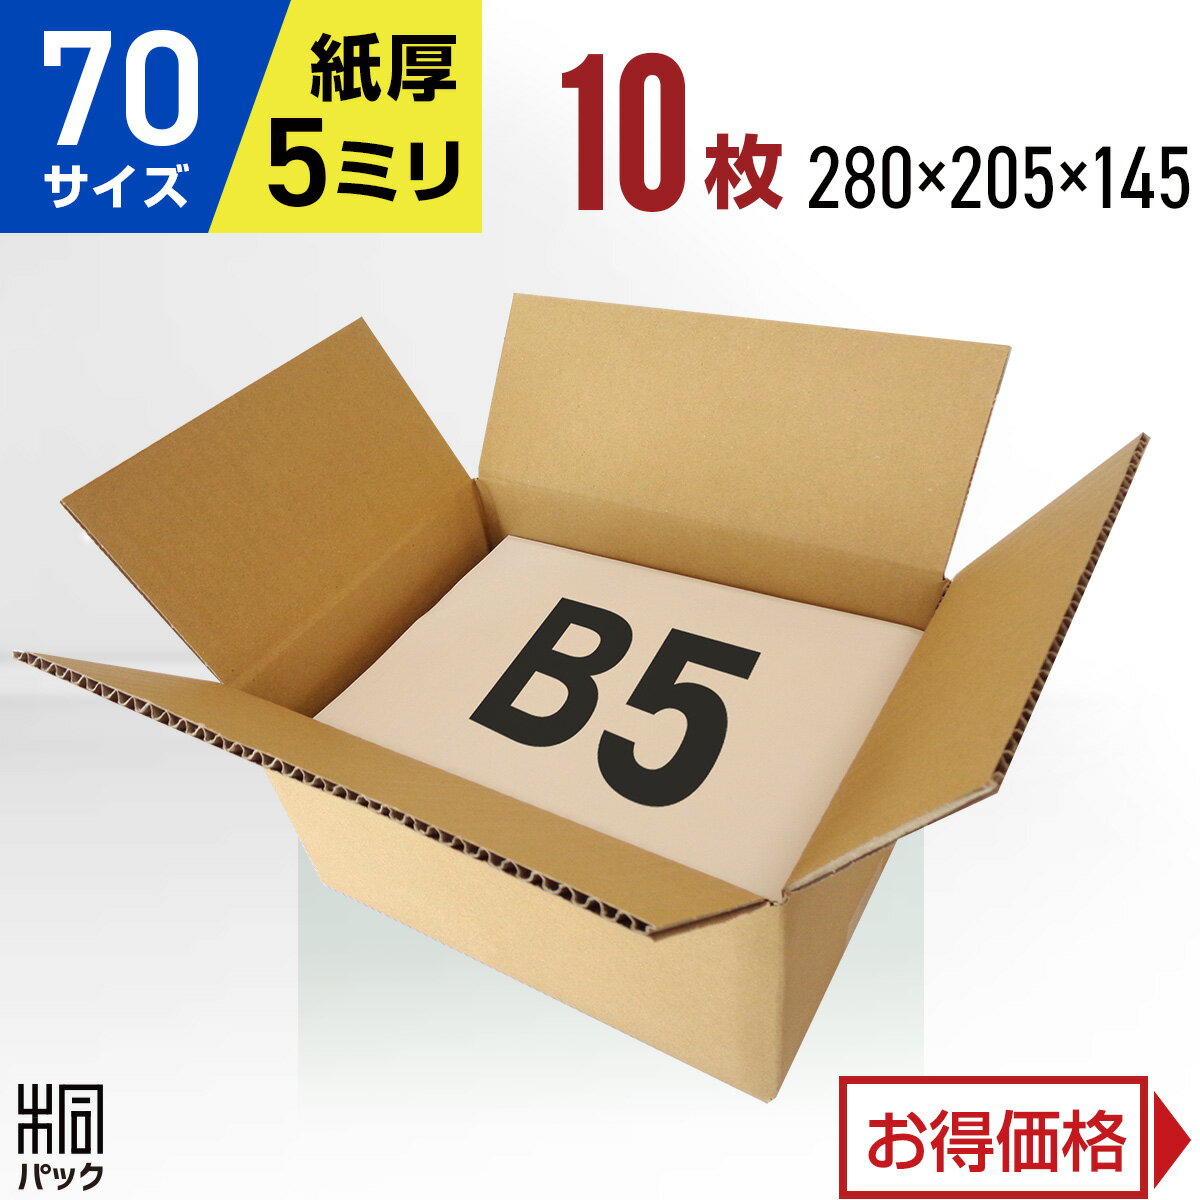 段ボール 箱 70サイズ (宅配 80サイズ 対応) B5 10枚 (5mm厚 280x205x145) 段ボール 80 B5 宅配 梱包 通販 資材 用 セット 日本製 安い A式 みかん箱 ダンボール箱 80 B5 らくらく メルカリ 便 ラクマ フリマ